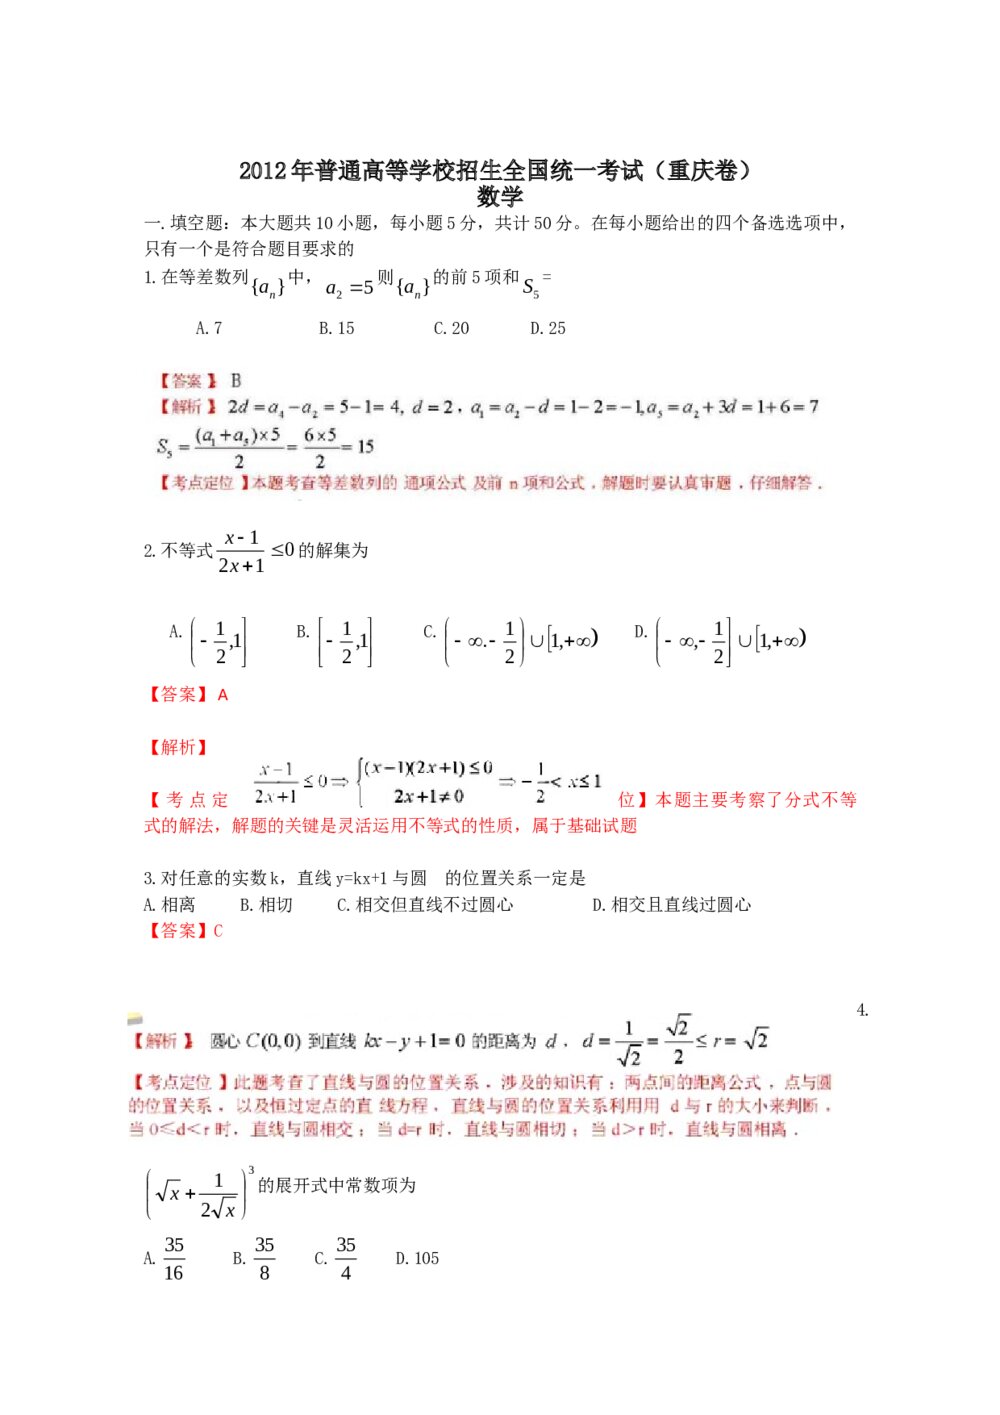 2012重庆市高考数学(理数)试题试卷+答案解析